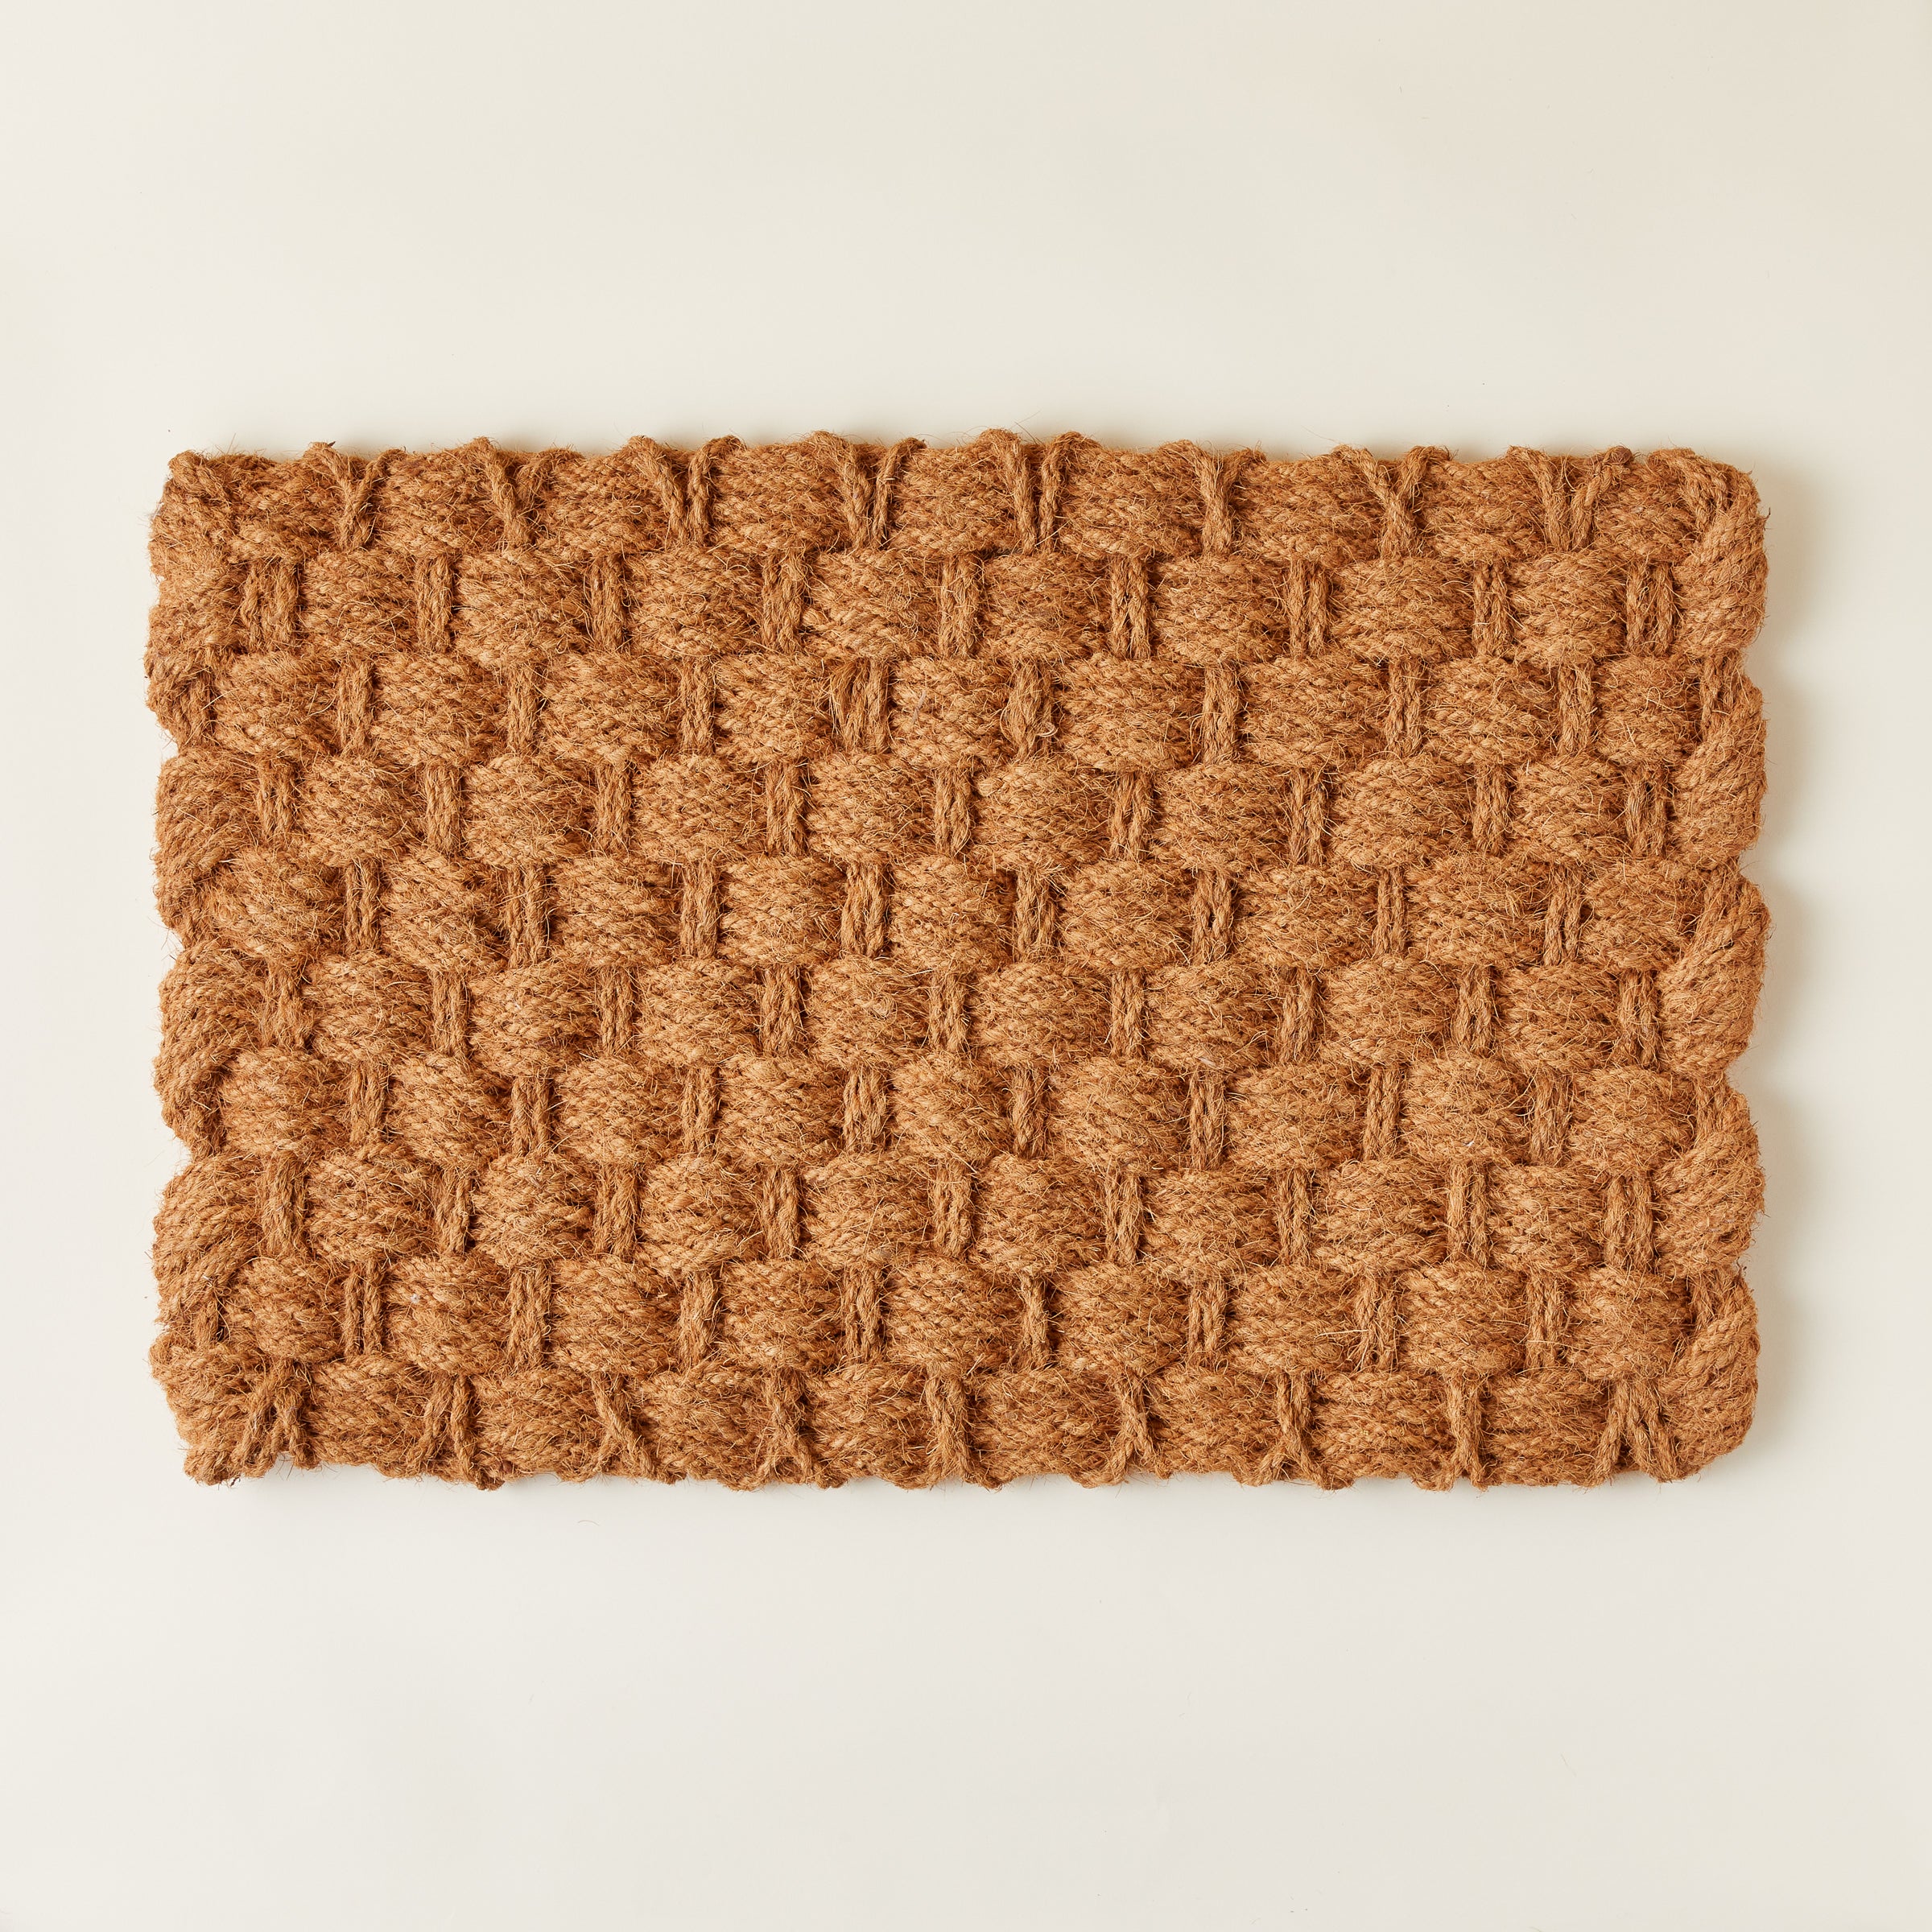 Basketweave Doormat